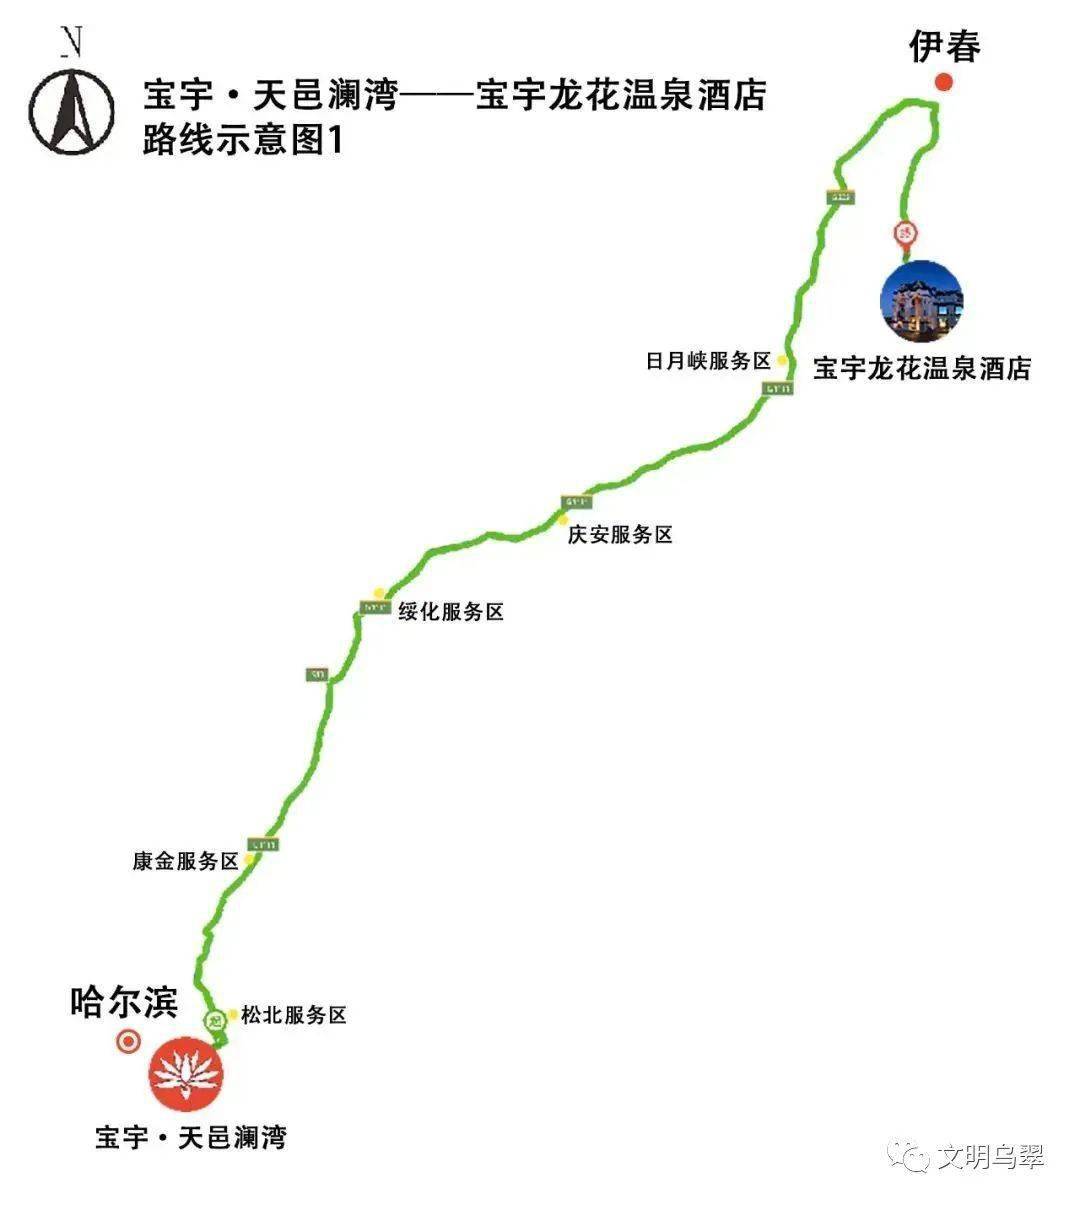 自驾车程约4小时23分钟367公里61鹤哈高速乌带公路自驾车程约1小时